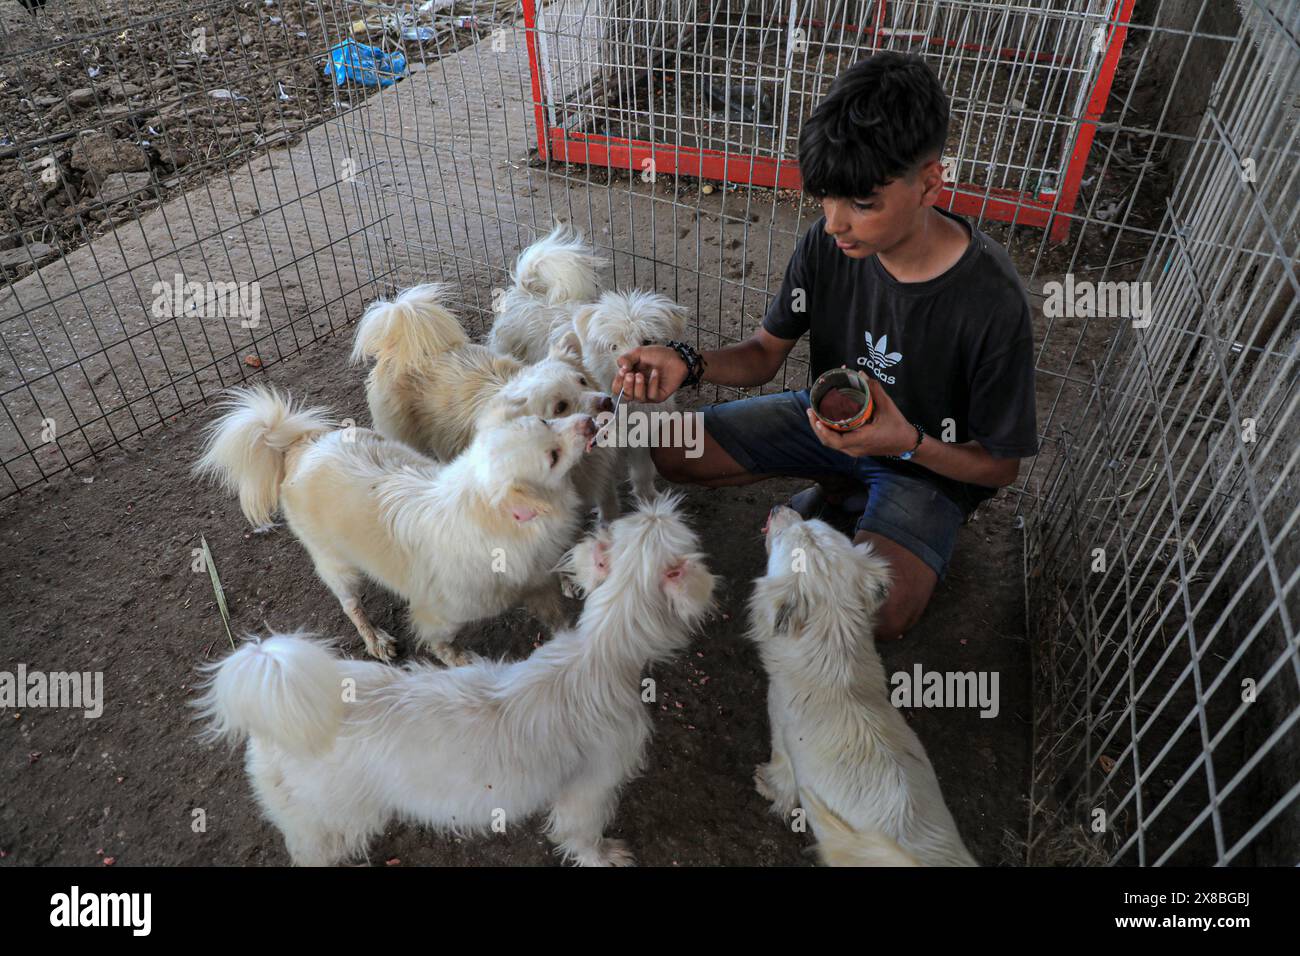 Gaza. 23 mai 2024. Un garçon assiste à des chiens évacués du zoo de Rafah dans une pépinière de la ville de Khan Younis, dans le sud de la bande de Gaza, le 23 mai 2024. Ces animaux ont été évacués en raison du conflit israélo-palestinien en cours. Crédit : Rizek Abdeljawad/Xinhua/Alamy Live News Banque D'Images